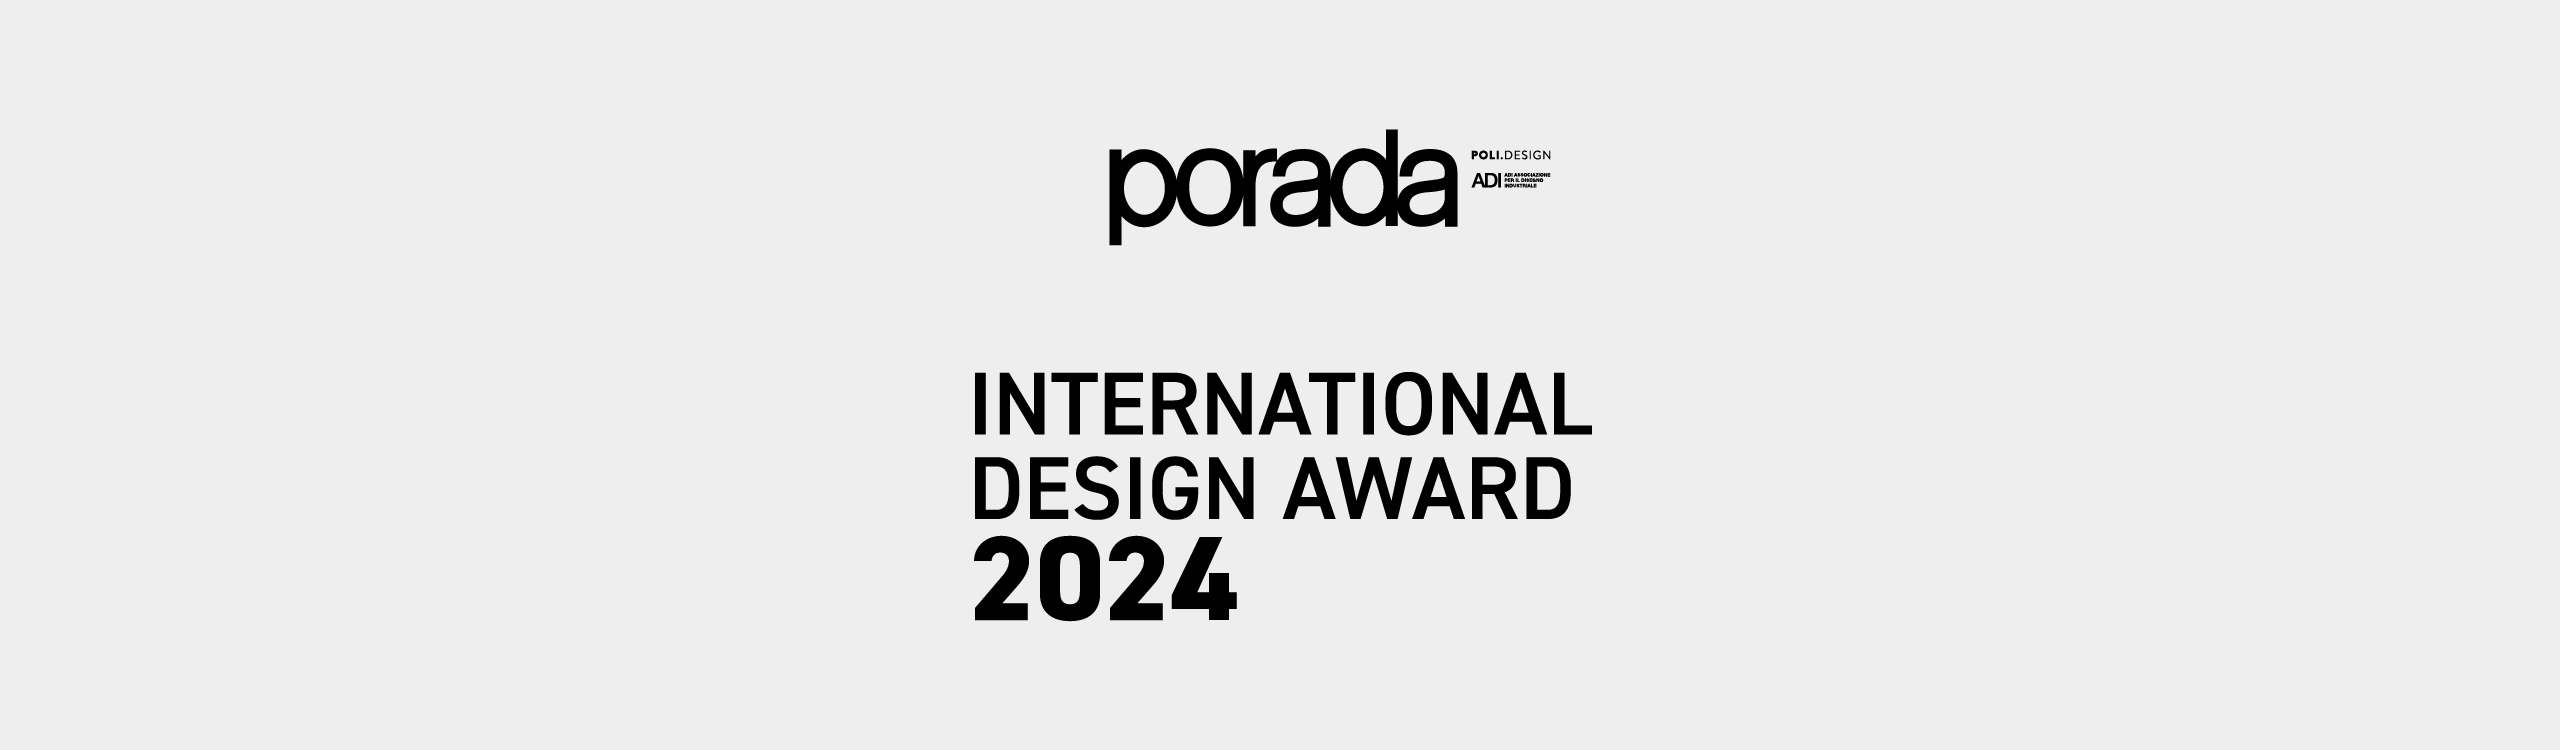 Award-2024-web_2560x750